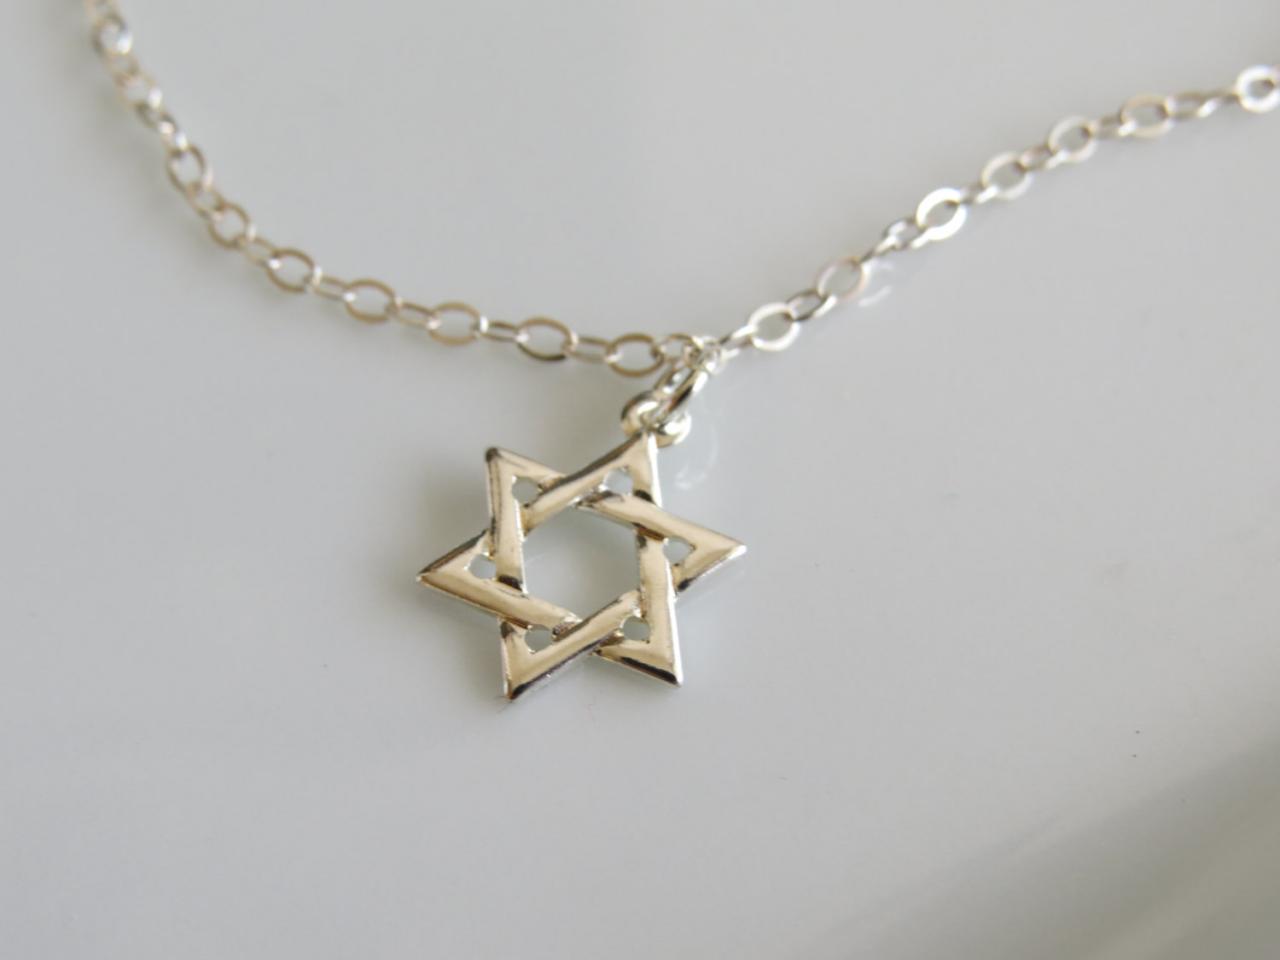 Silver Bracelet - Star Of David Bracelet, Magen David Bracelet, Silver Star Pendant, Jewish Silver Jewelry, Dainty Silver Bracelet